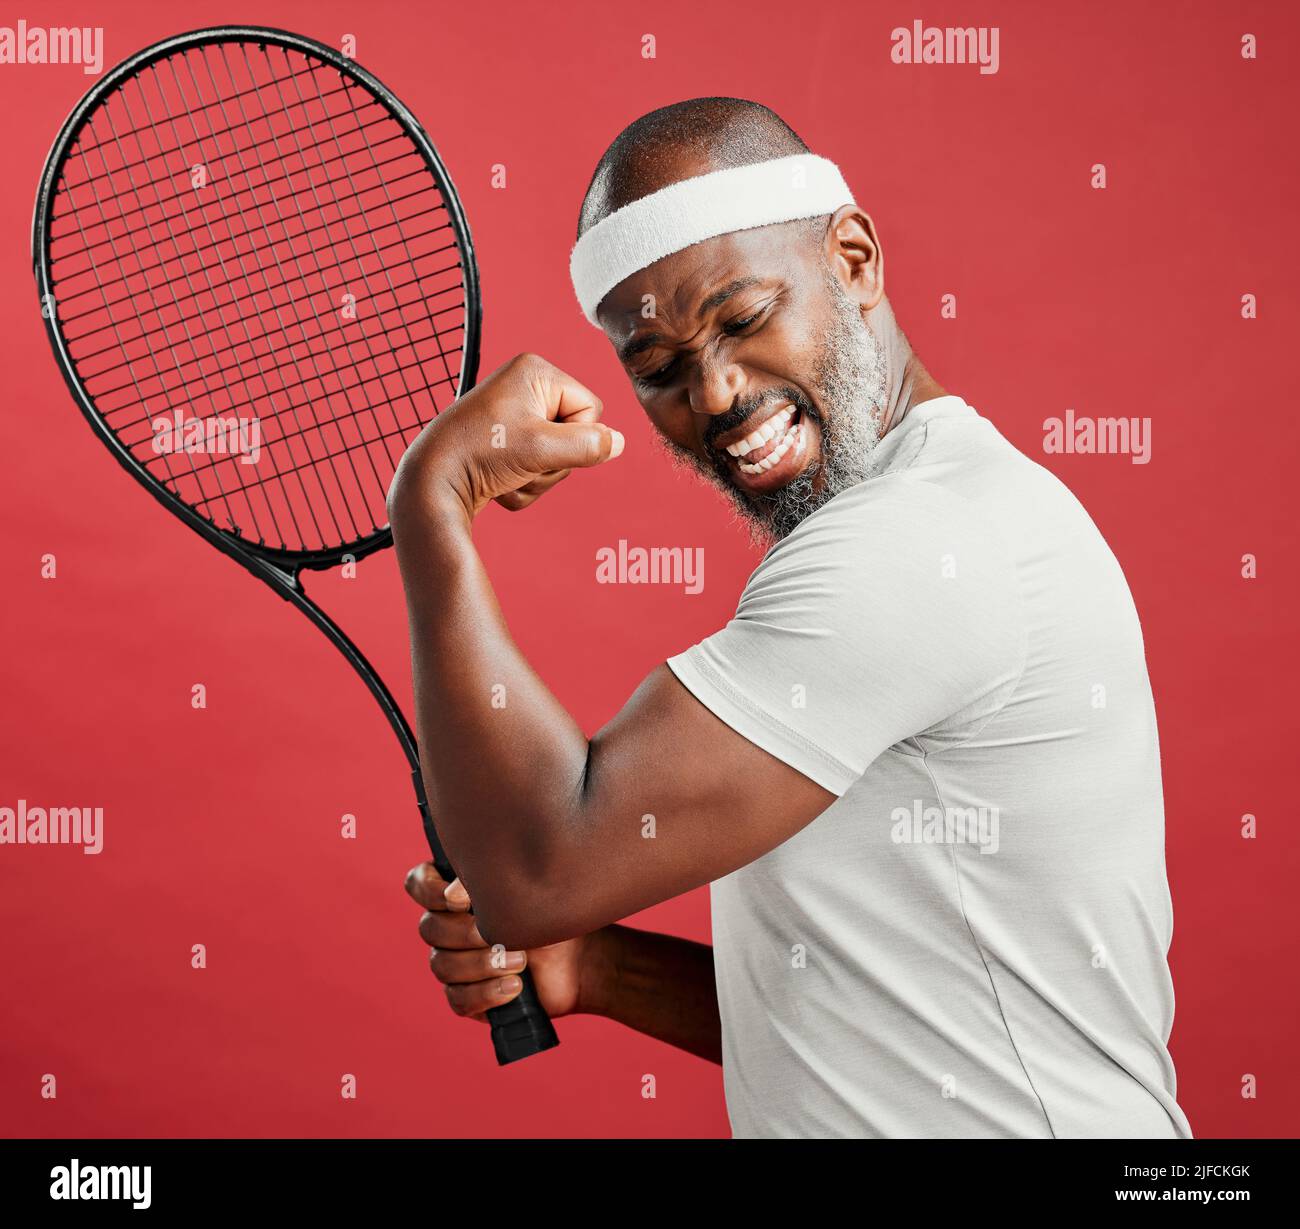 Un uomo afro-americano maturo felice in piedi su uno sfondo rosso in studio, flettendo il suo bicep mentre si posa con una racchetta da tennis. Nero sorridente Foto Stock